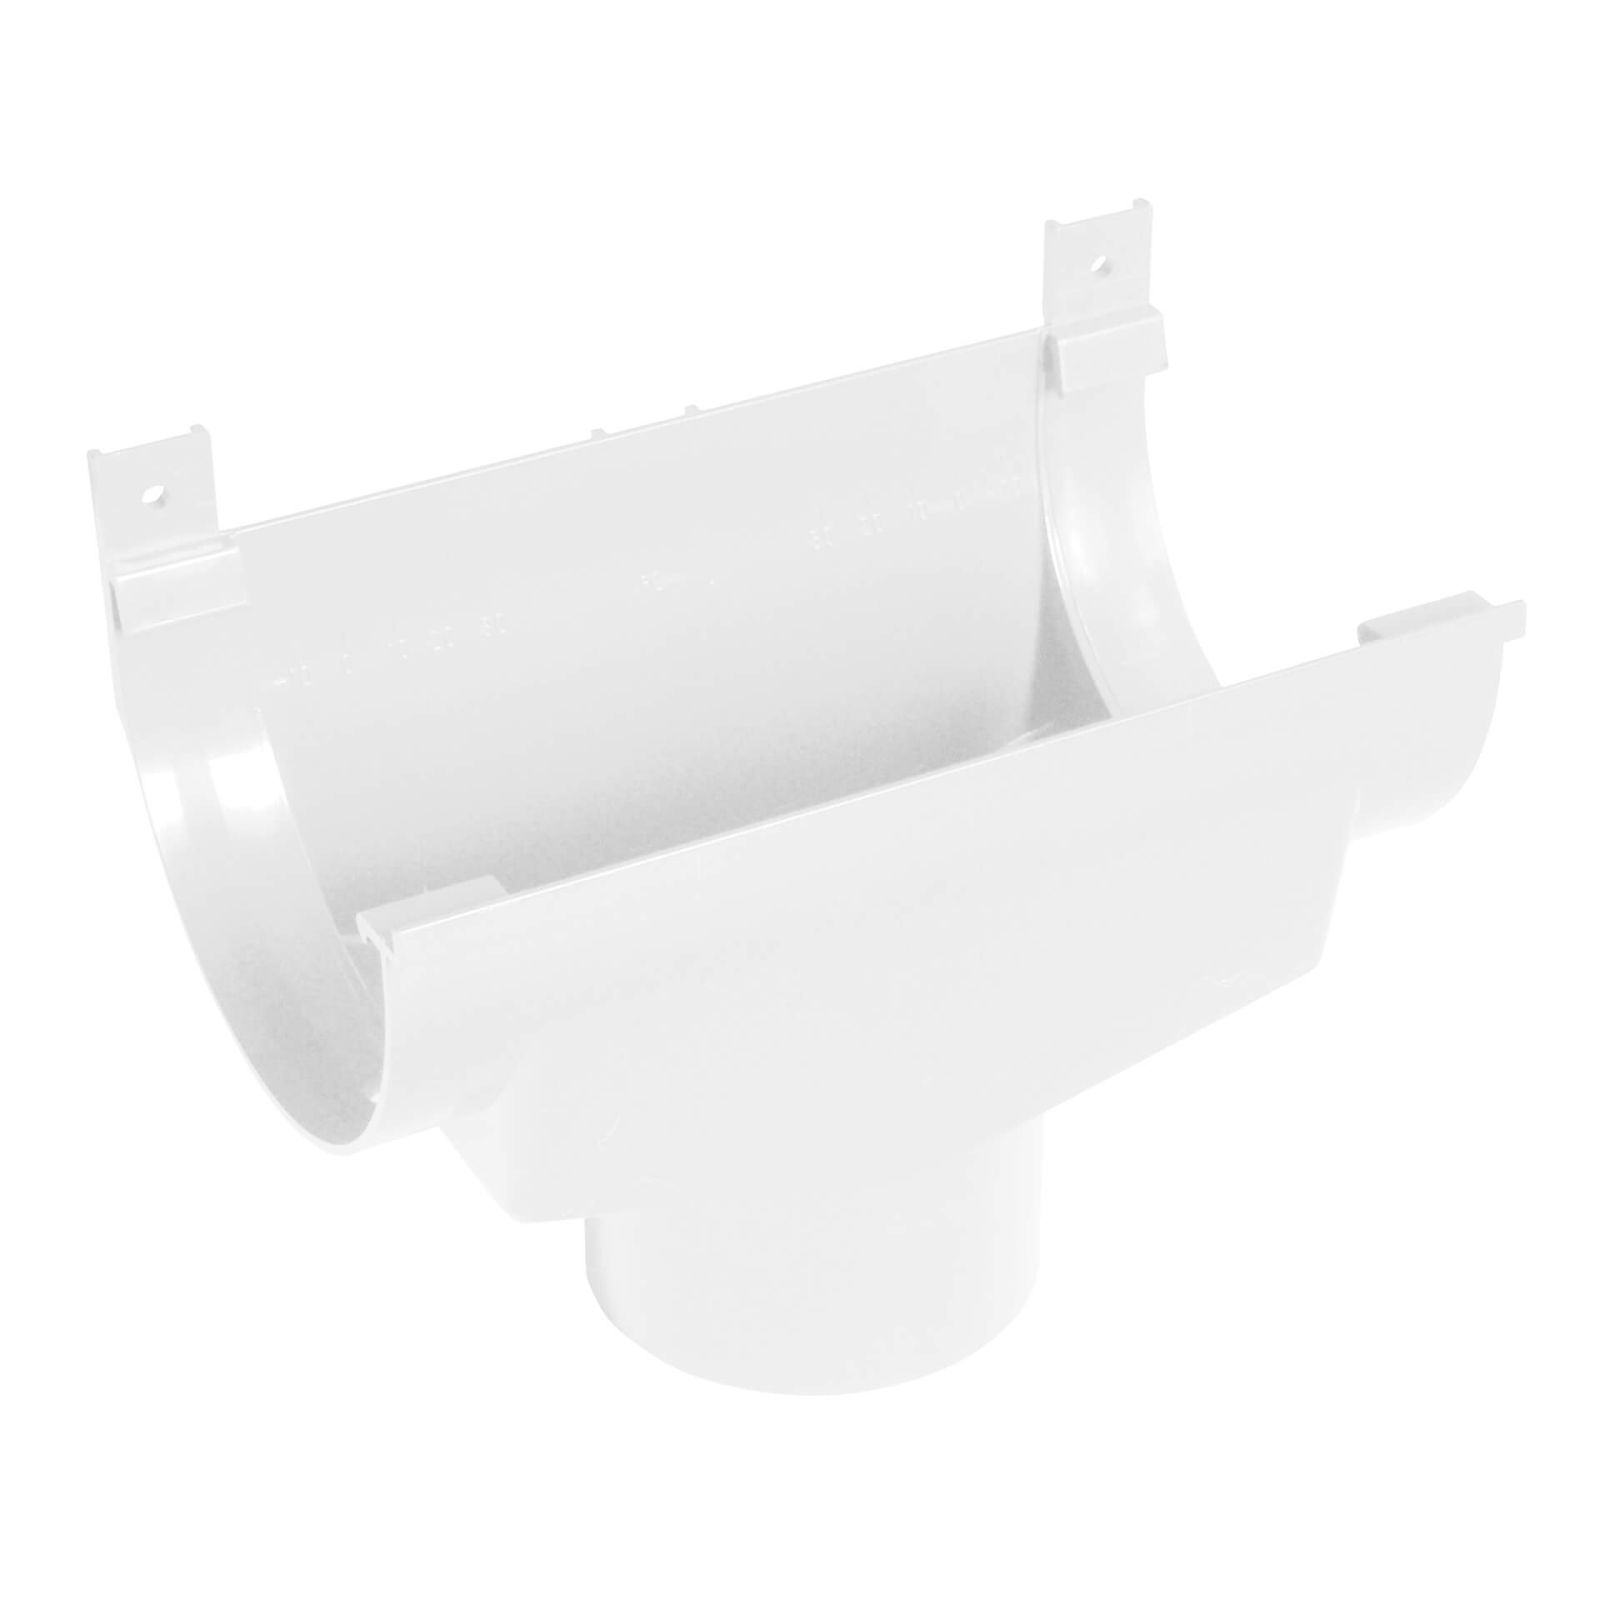 Kunststoff Dachrinnen Sparpaket 6 m | Ø 150/110 mm | Farbe Weiß #6